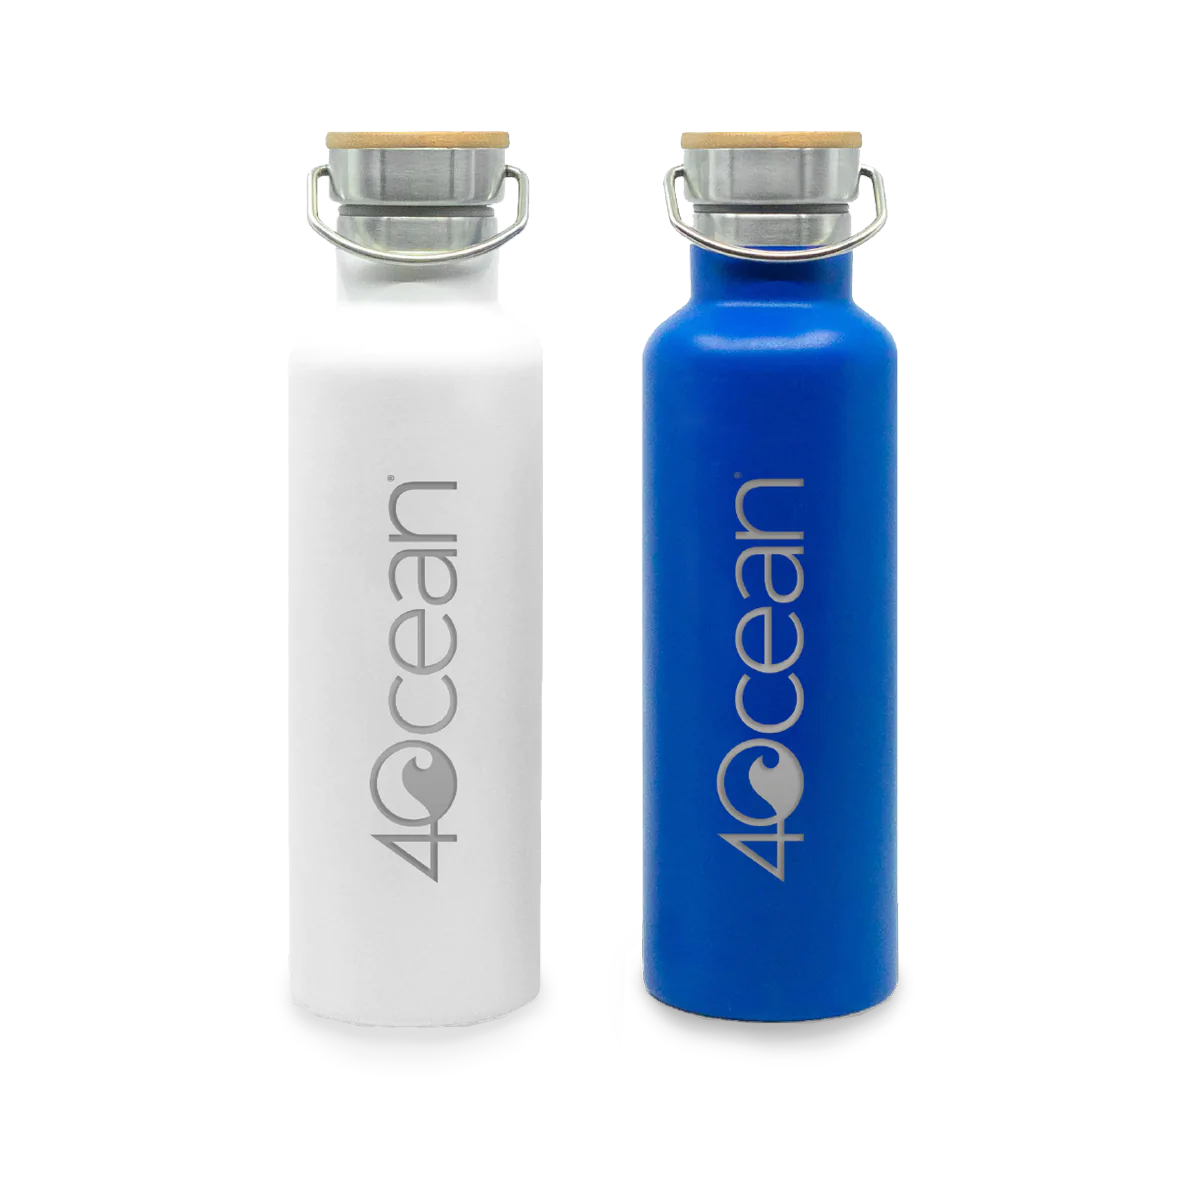 4ocean Reusable Bottle White